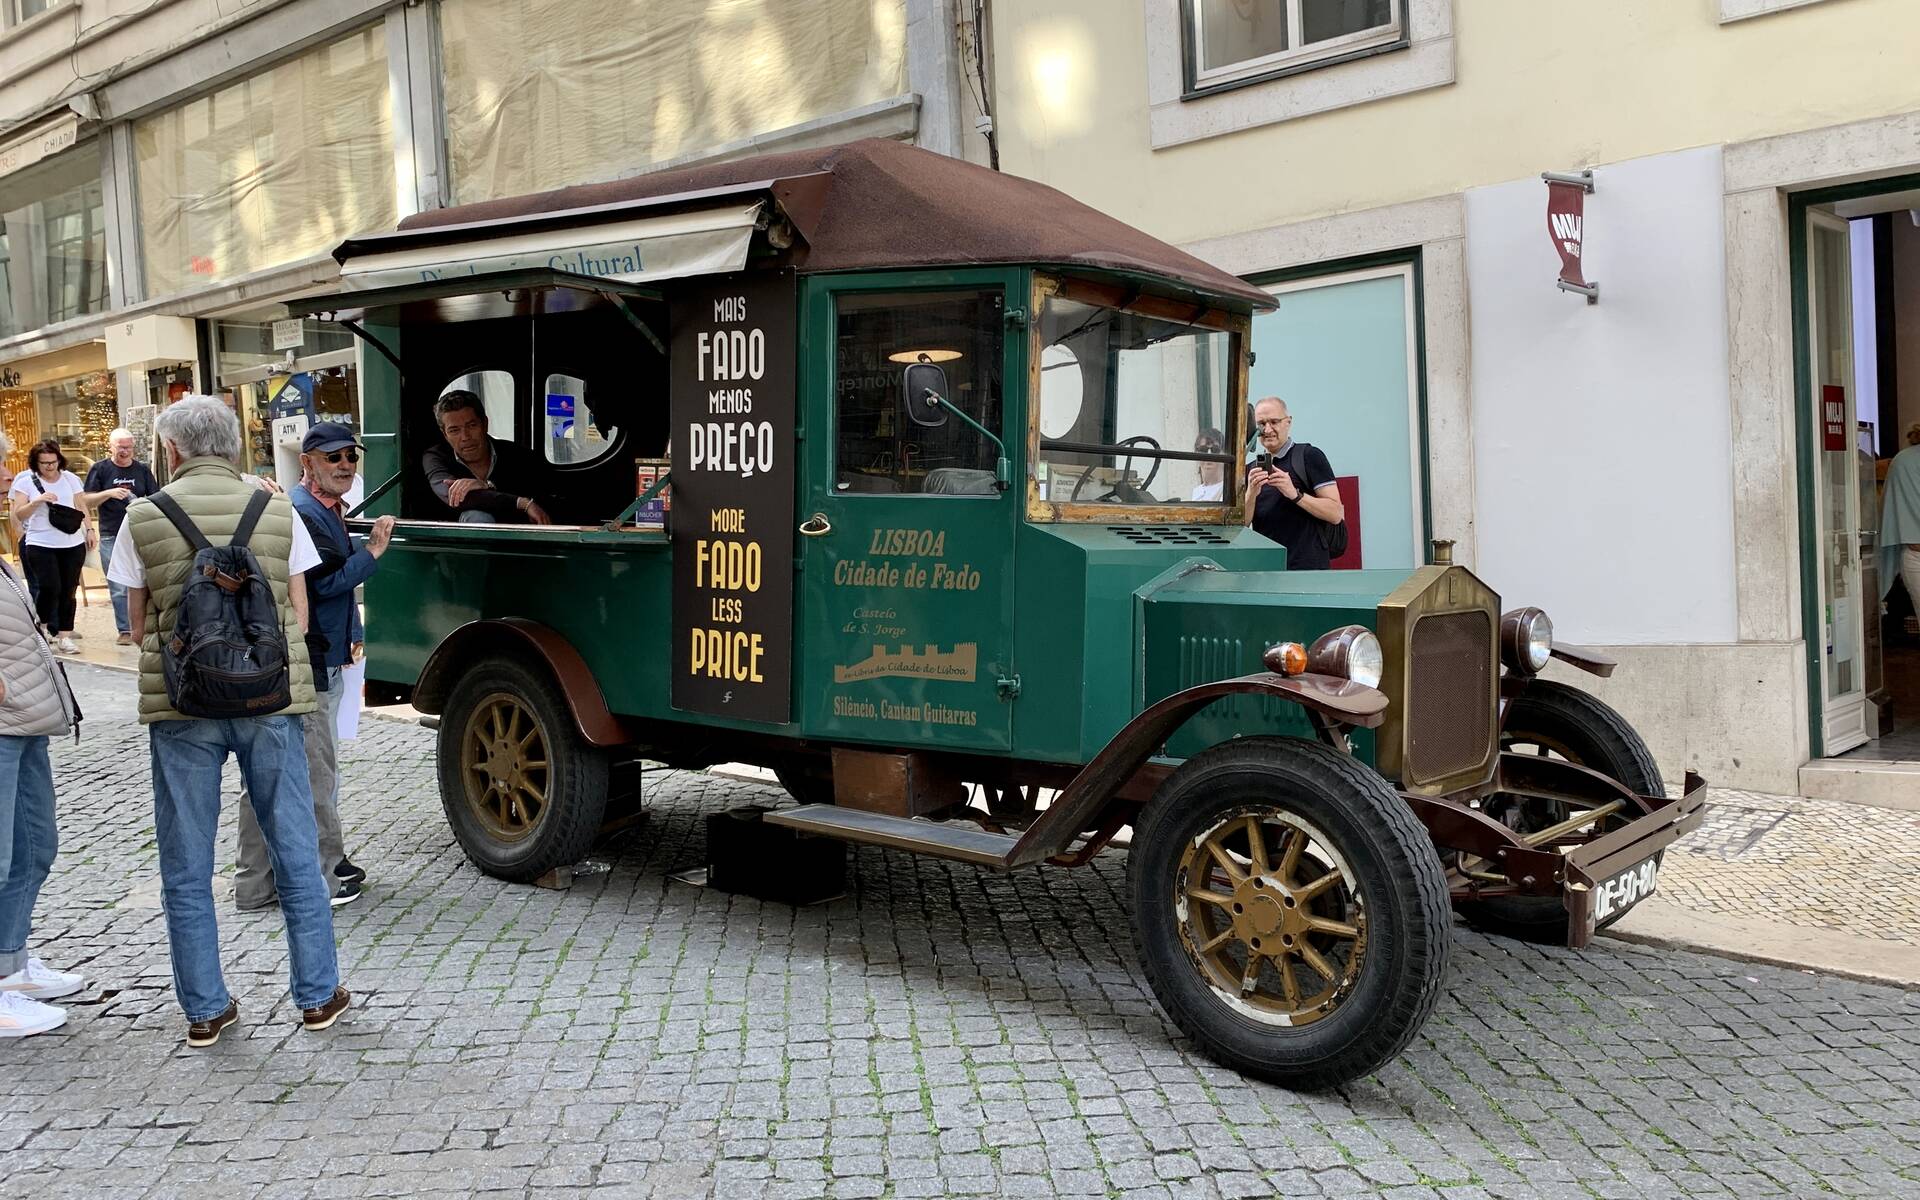 Photos : 11 véhicules spéciaux et inusités croisés au Portugal 569090-photos-11-vehicules-speciaux-et-inusites-croises-au-portugal